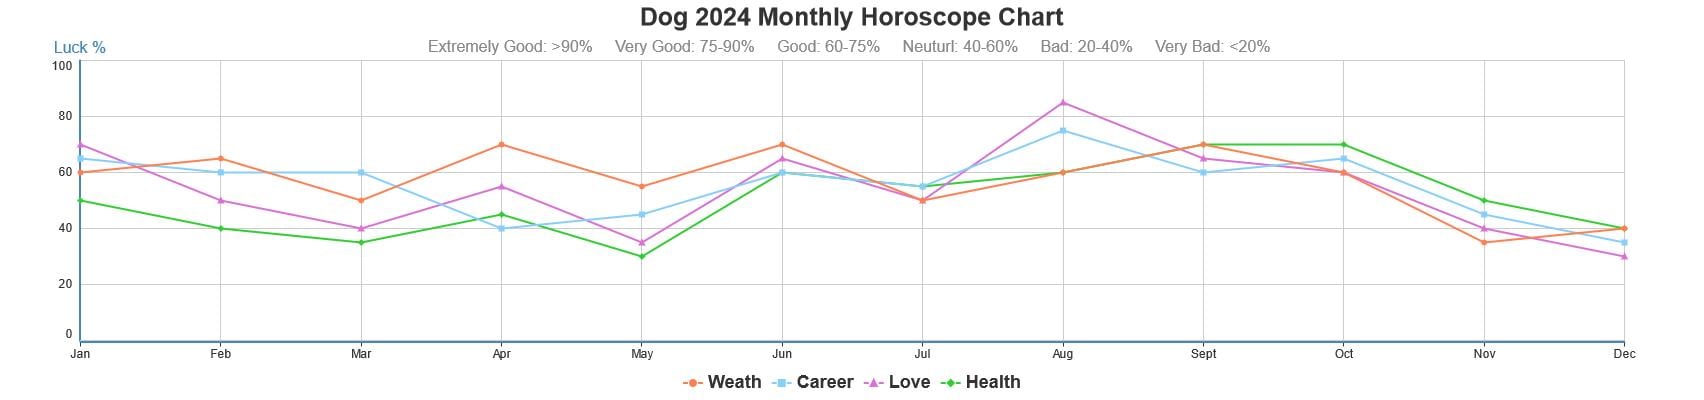 Dog 2024 monthly horoscope